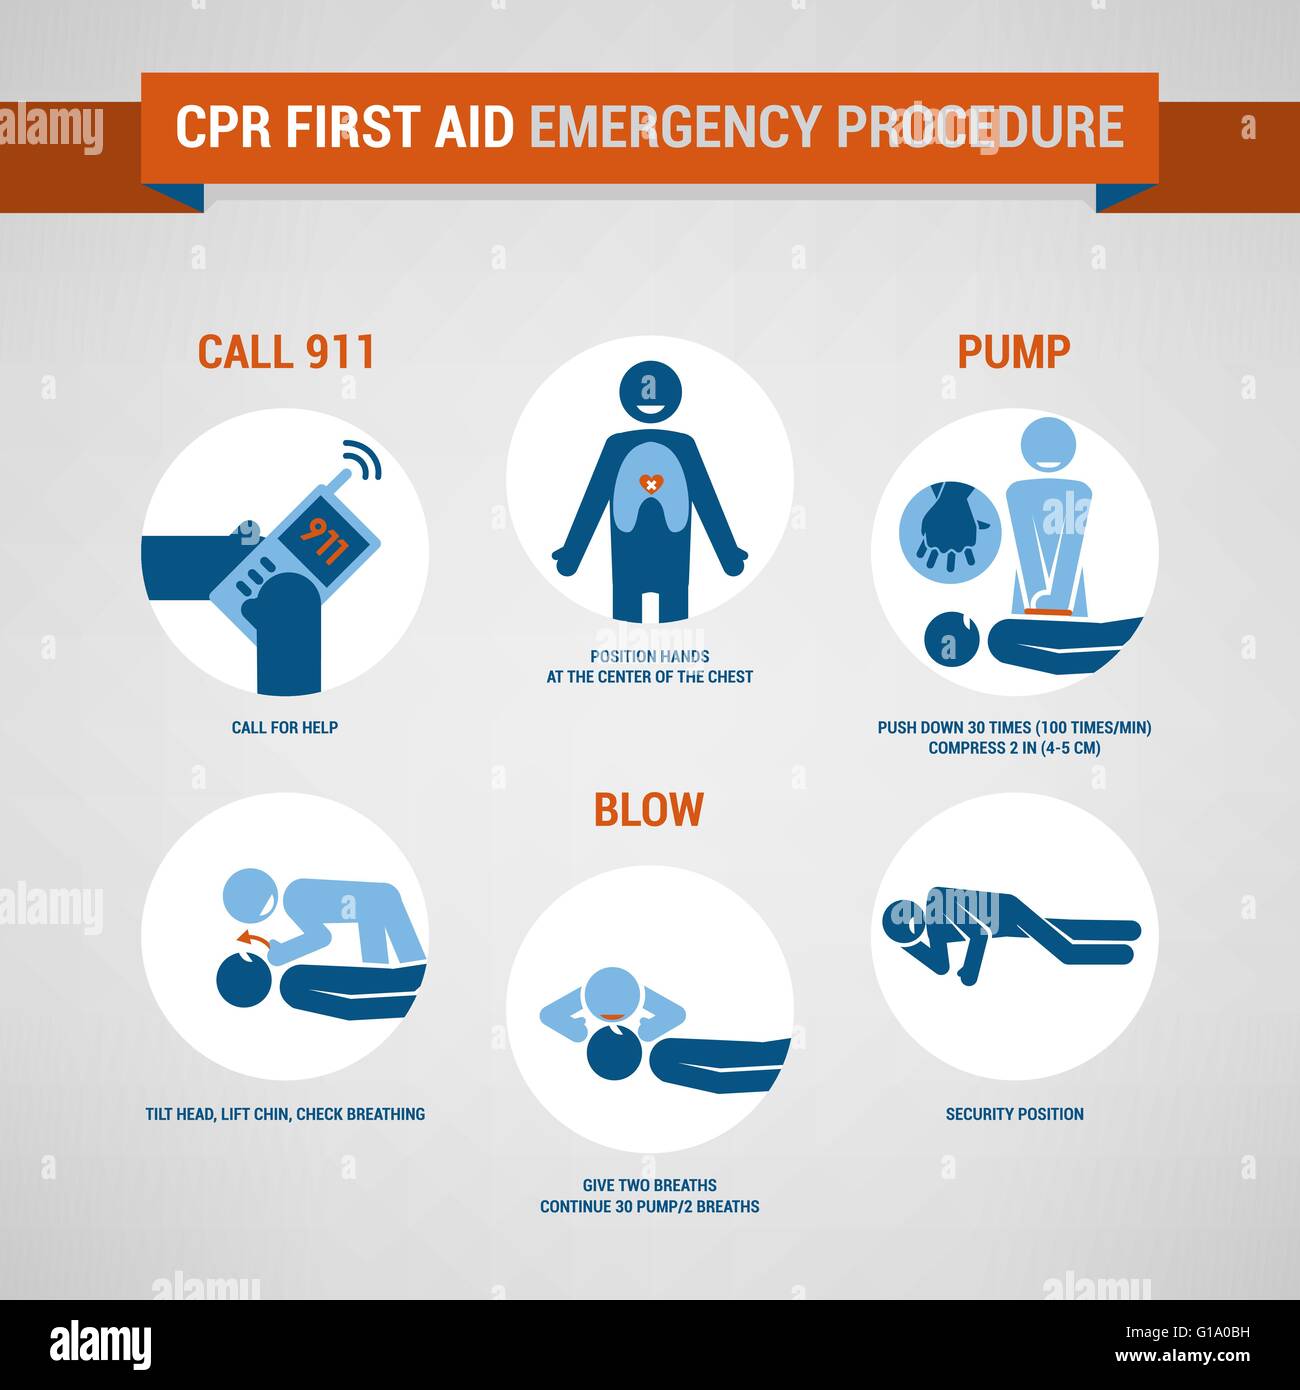 CPR-erste Hilfe und Training Verfahren, Notfall- und Gesundheitsversorgung Konzept Stock Vektor